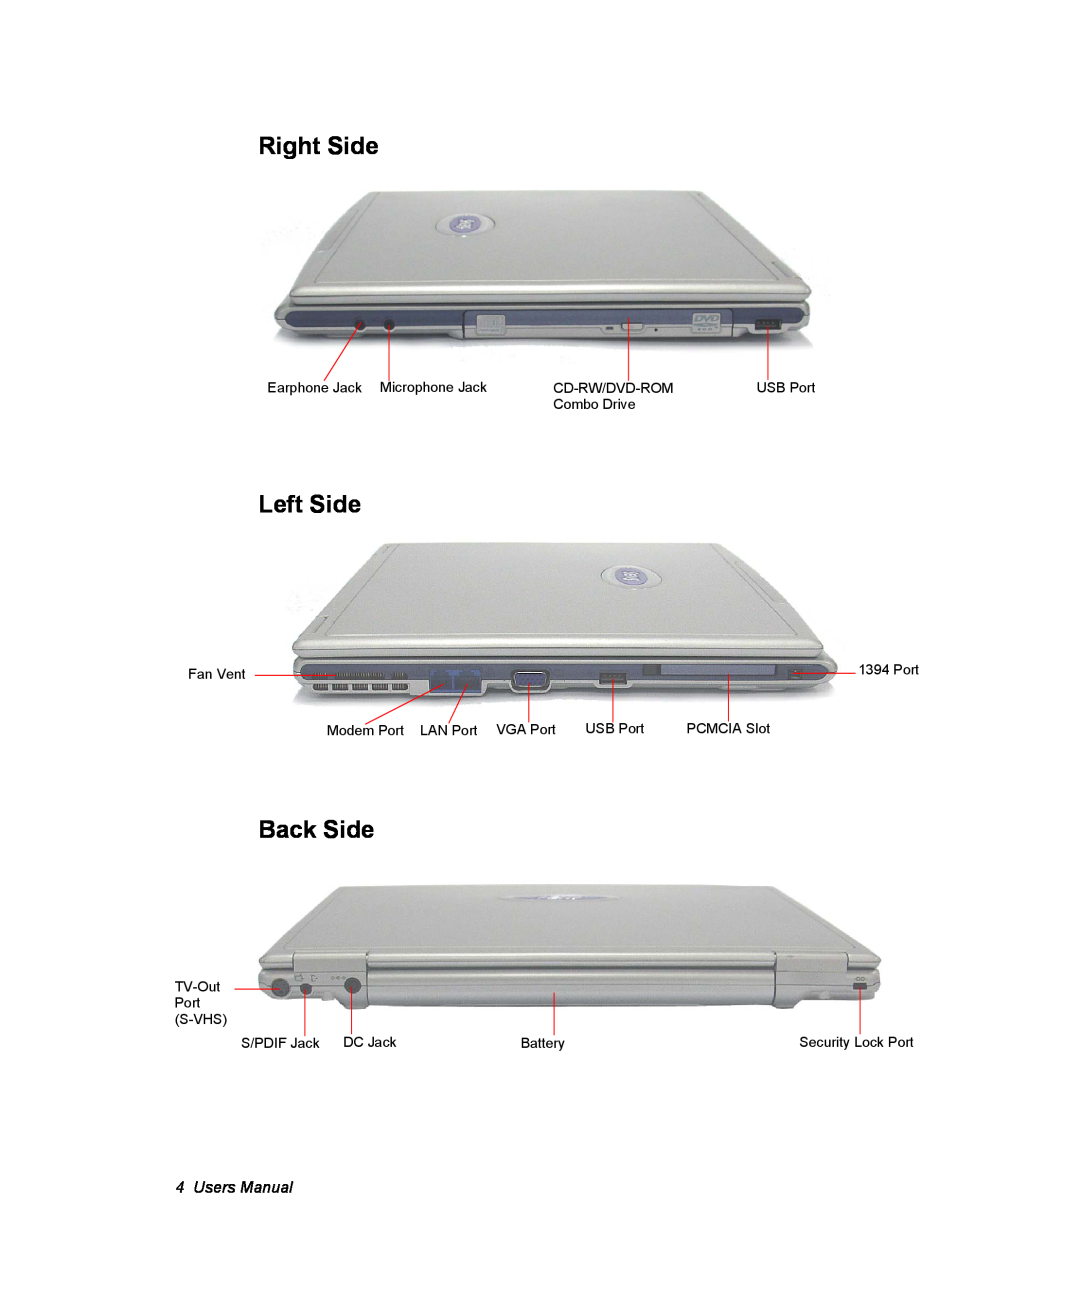 Samsung NX10-SEED/SEF, EV-NX10ZZBABZA, NX10RP1N9W/SEG, NX10RP0BW9/SEG manual Right Side, Left Side, Back Side, Users Manual 